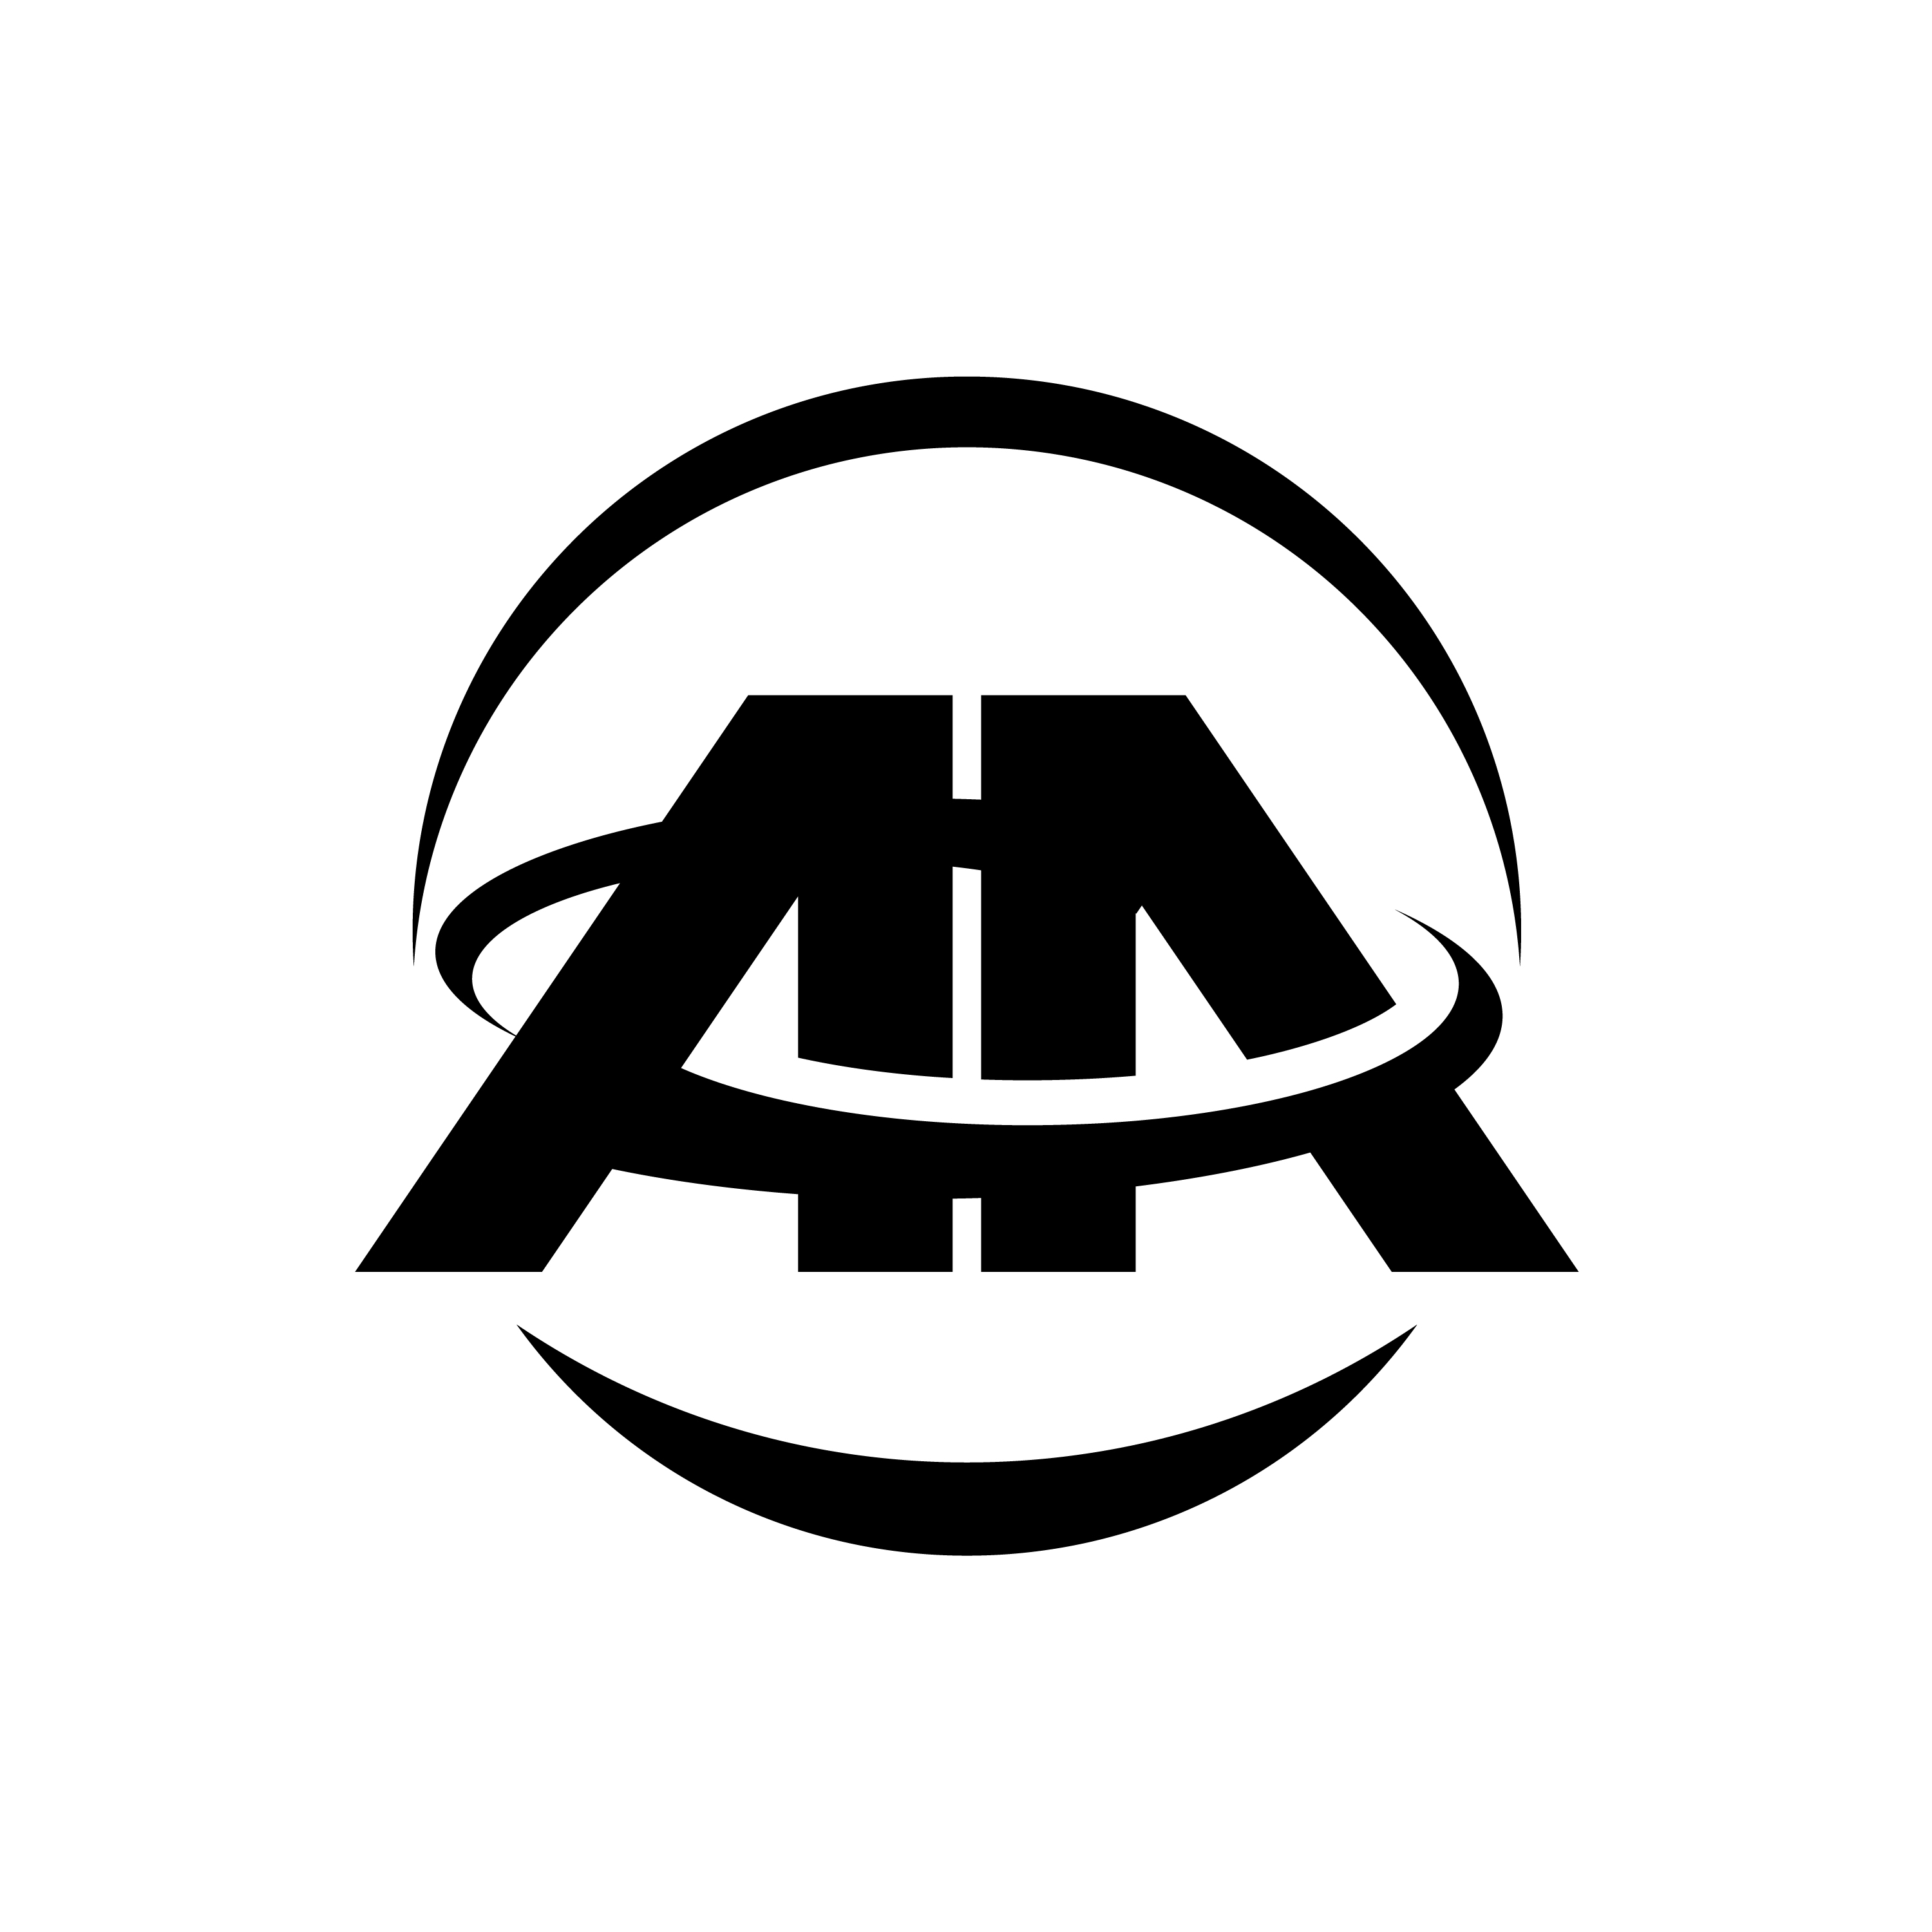 Ava Area logo (1)1